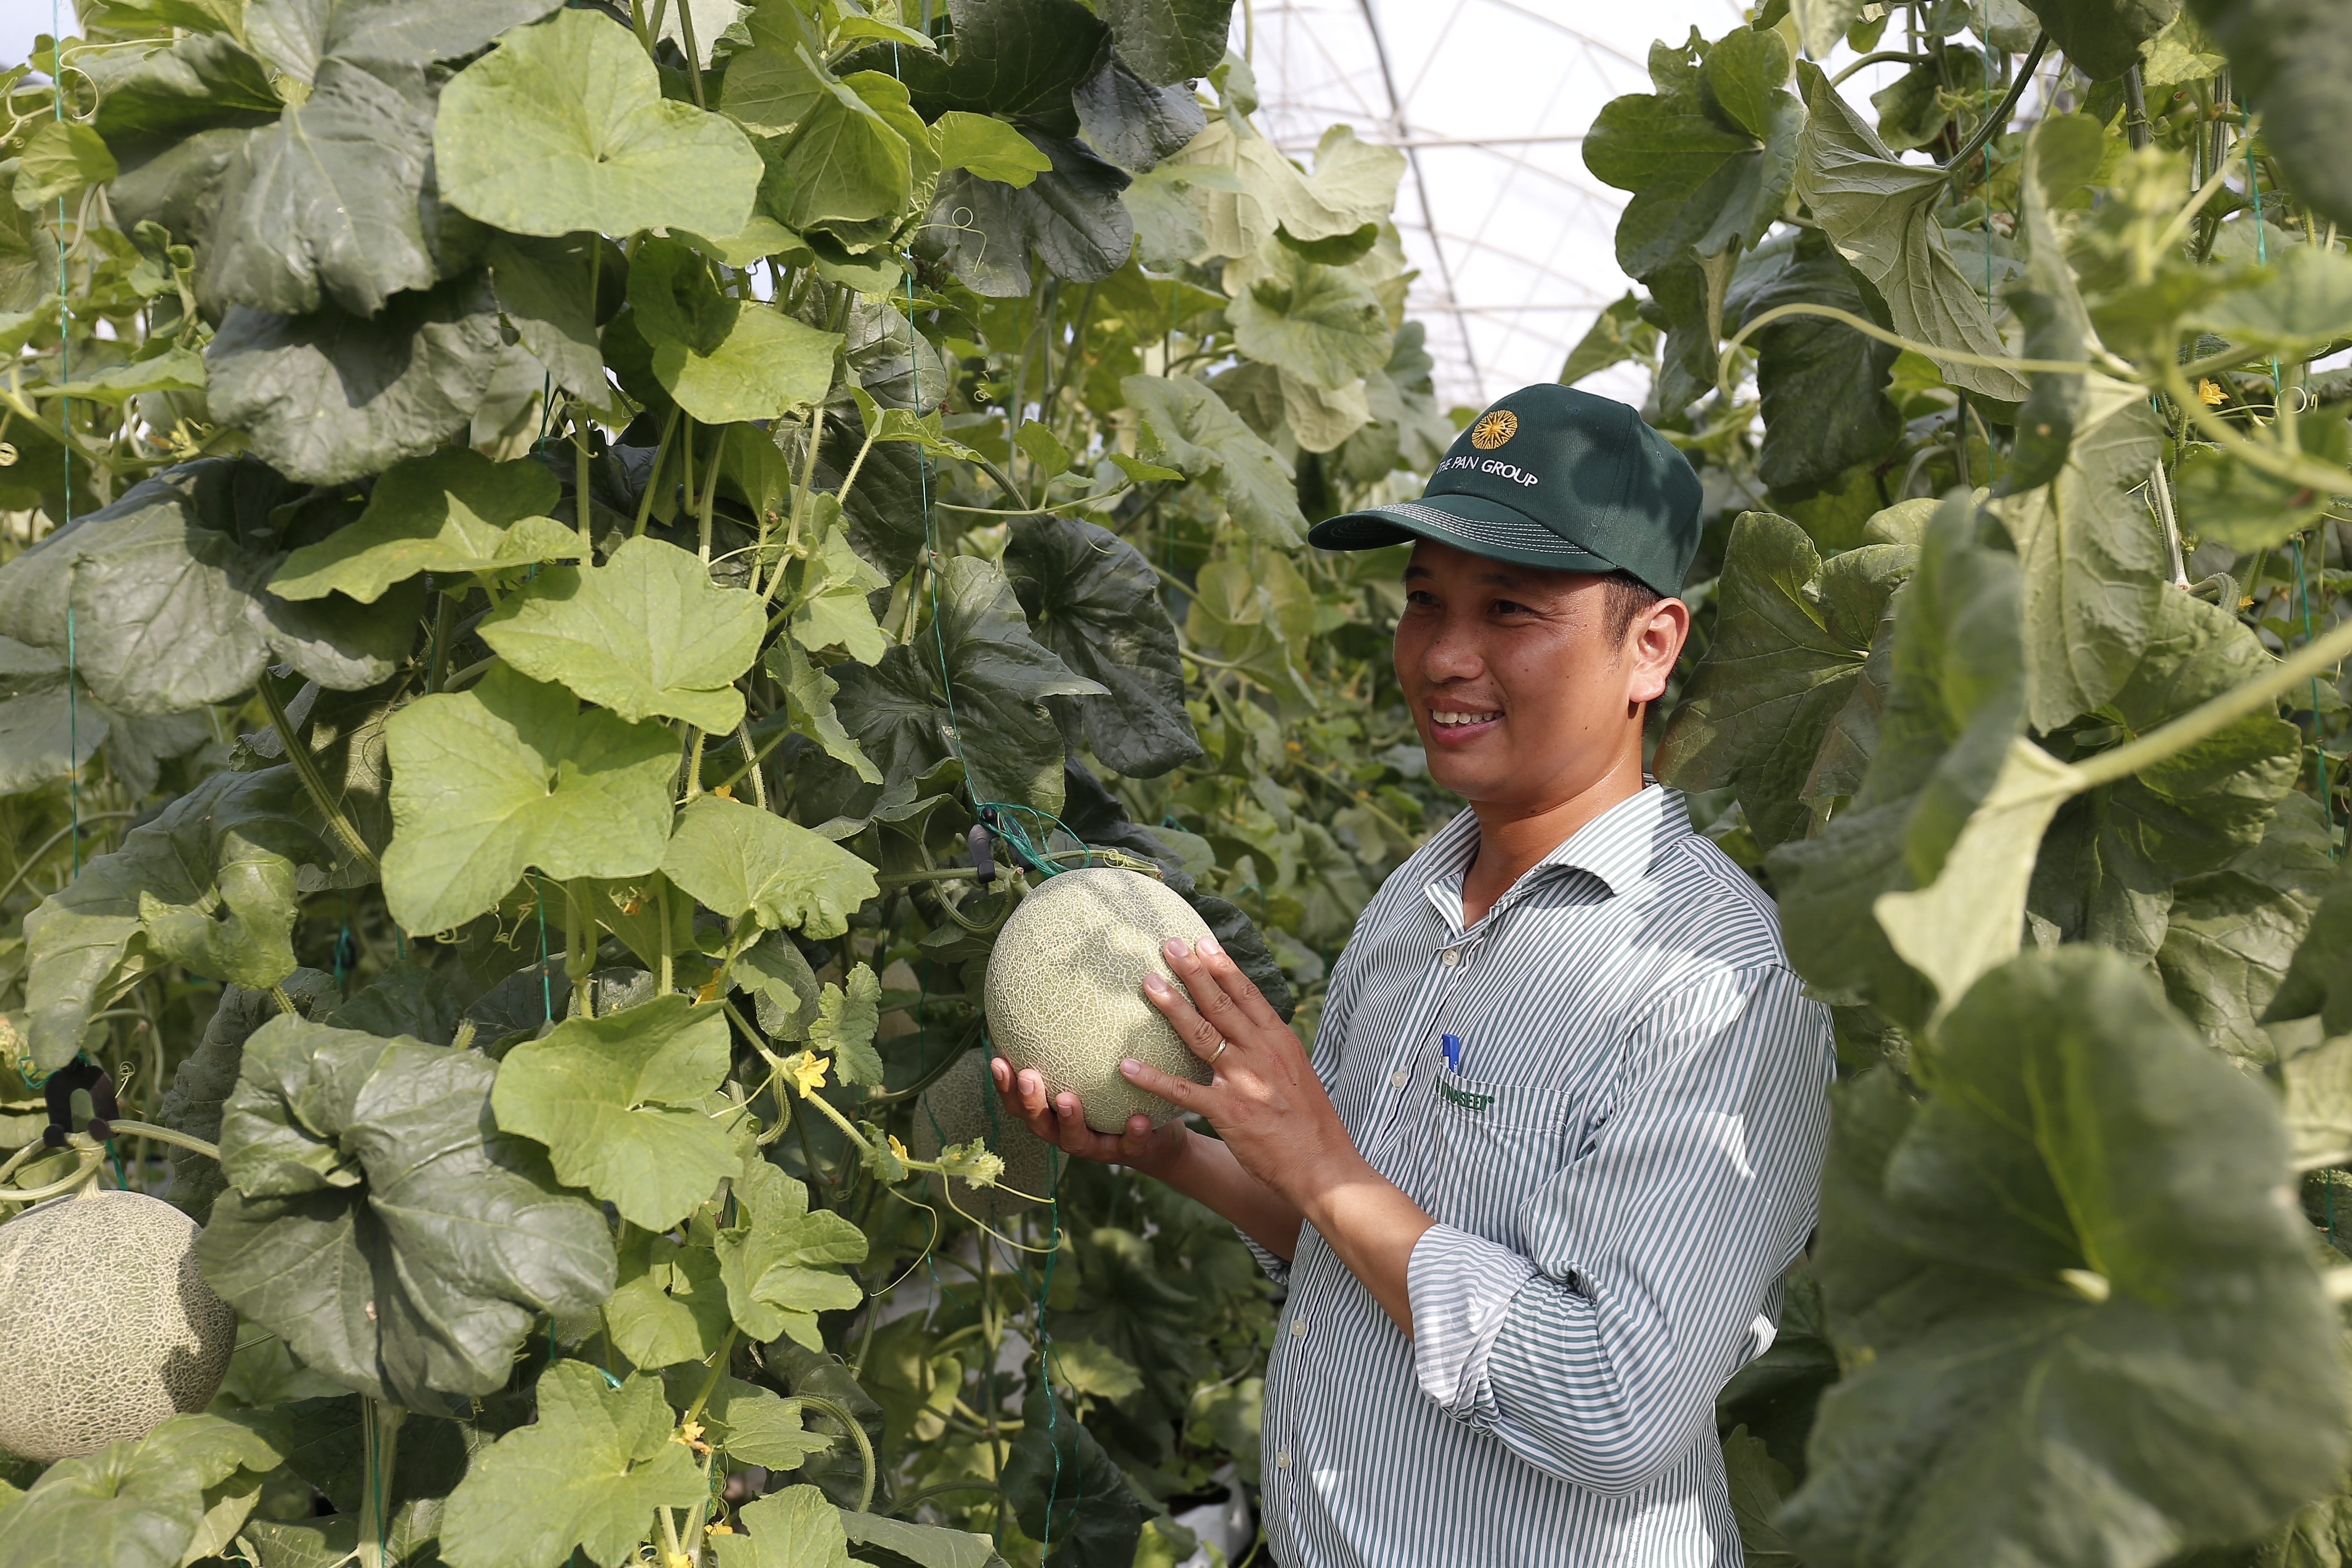 Dưa Nhật Bản trồng trong nhà lưới theo tiêu chuẩn Global Gap tại CTCP Đầu tư và Phát triển Nông nghiệp Công nghệ cao Hà Nam, đơn vị 100% vốn của Vinaseed | Ảnh: Mỹ Hạnh, 2020